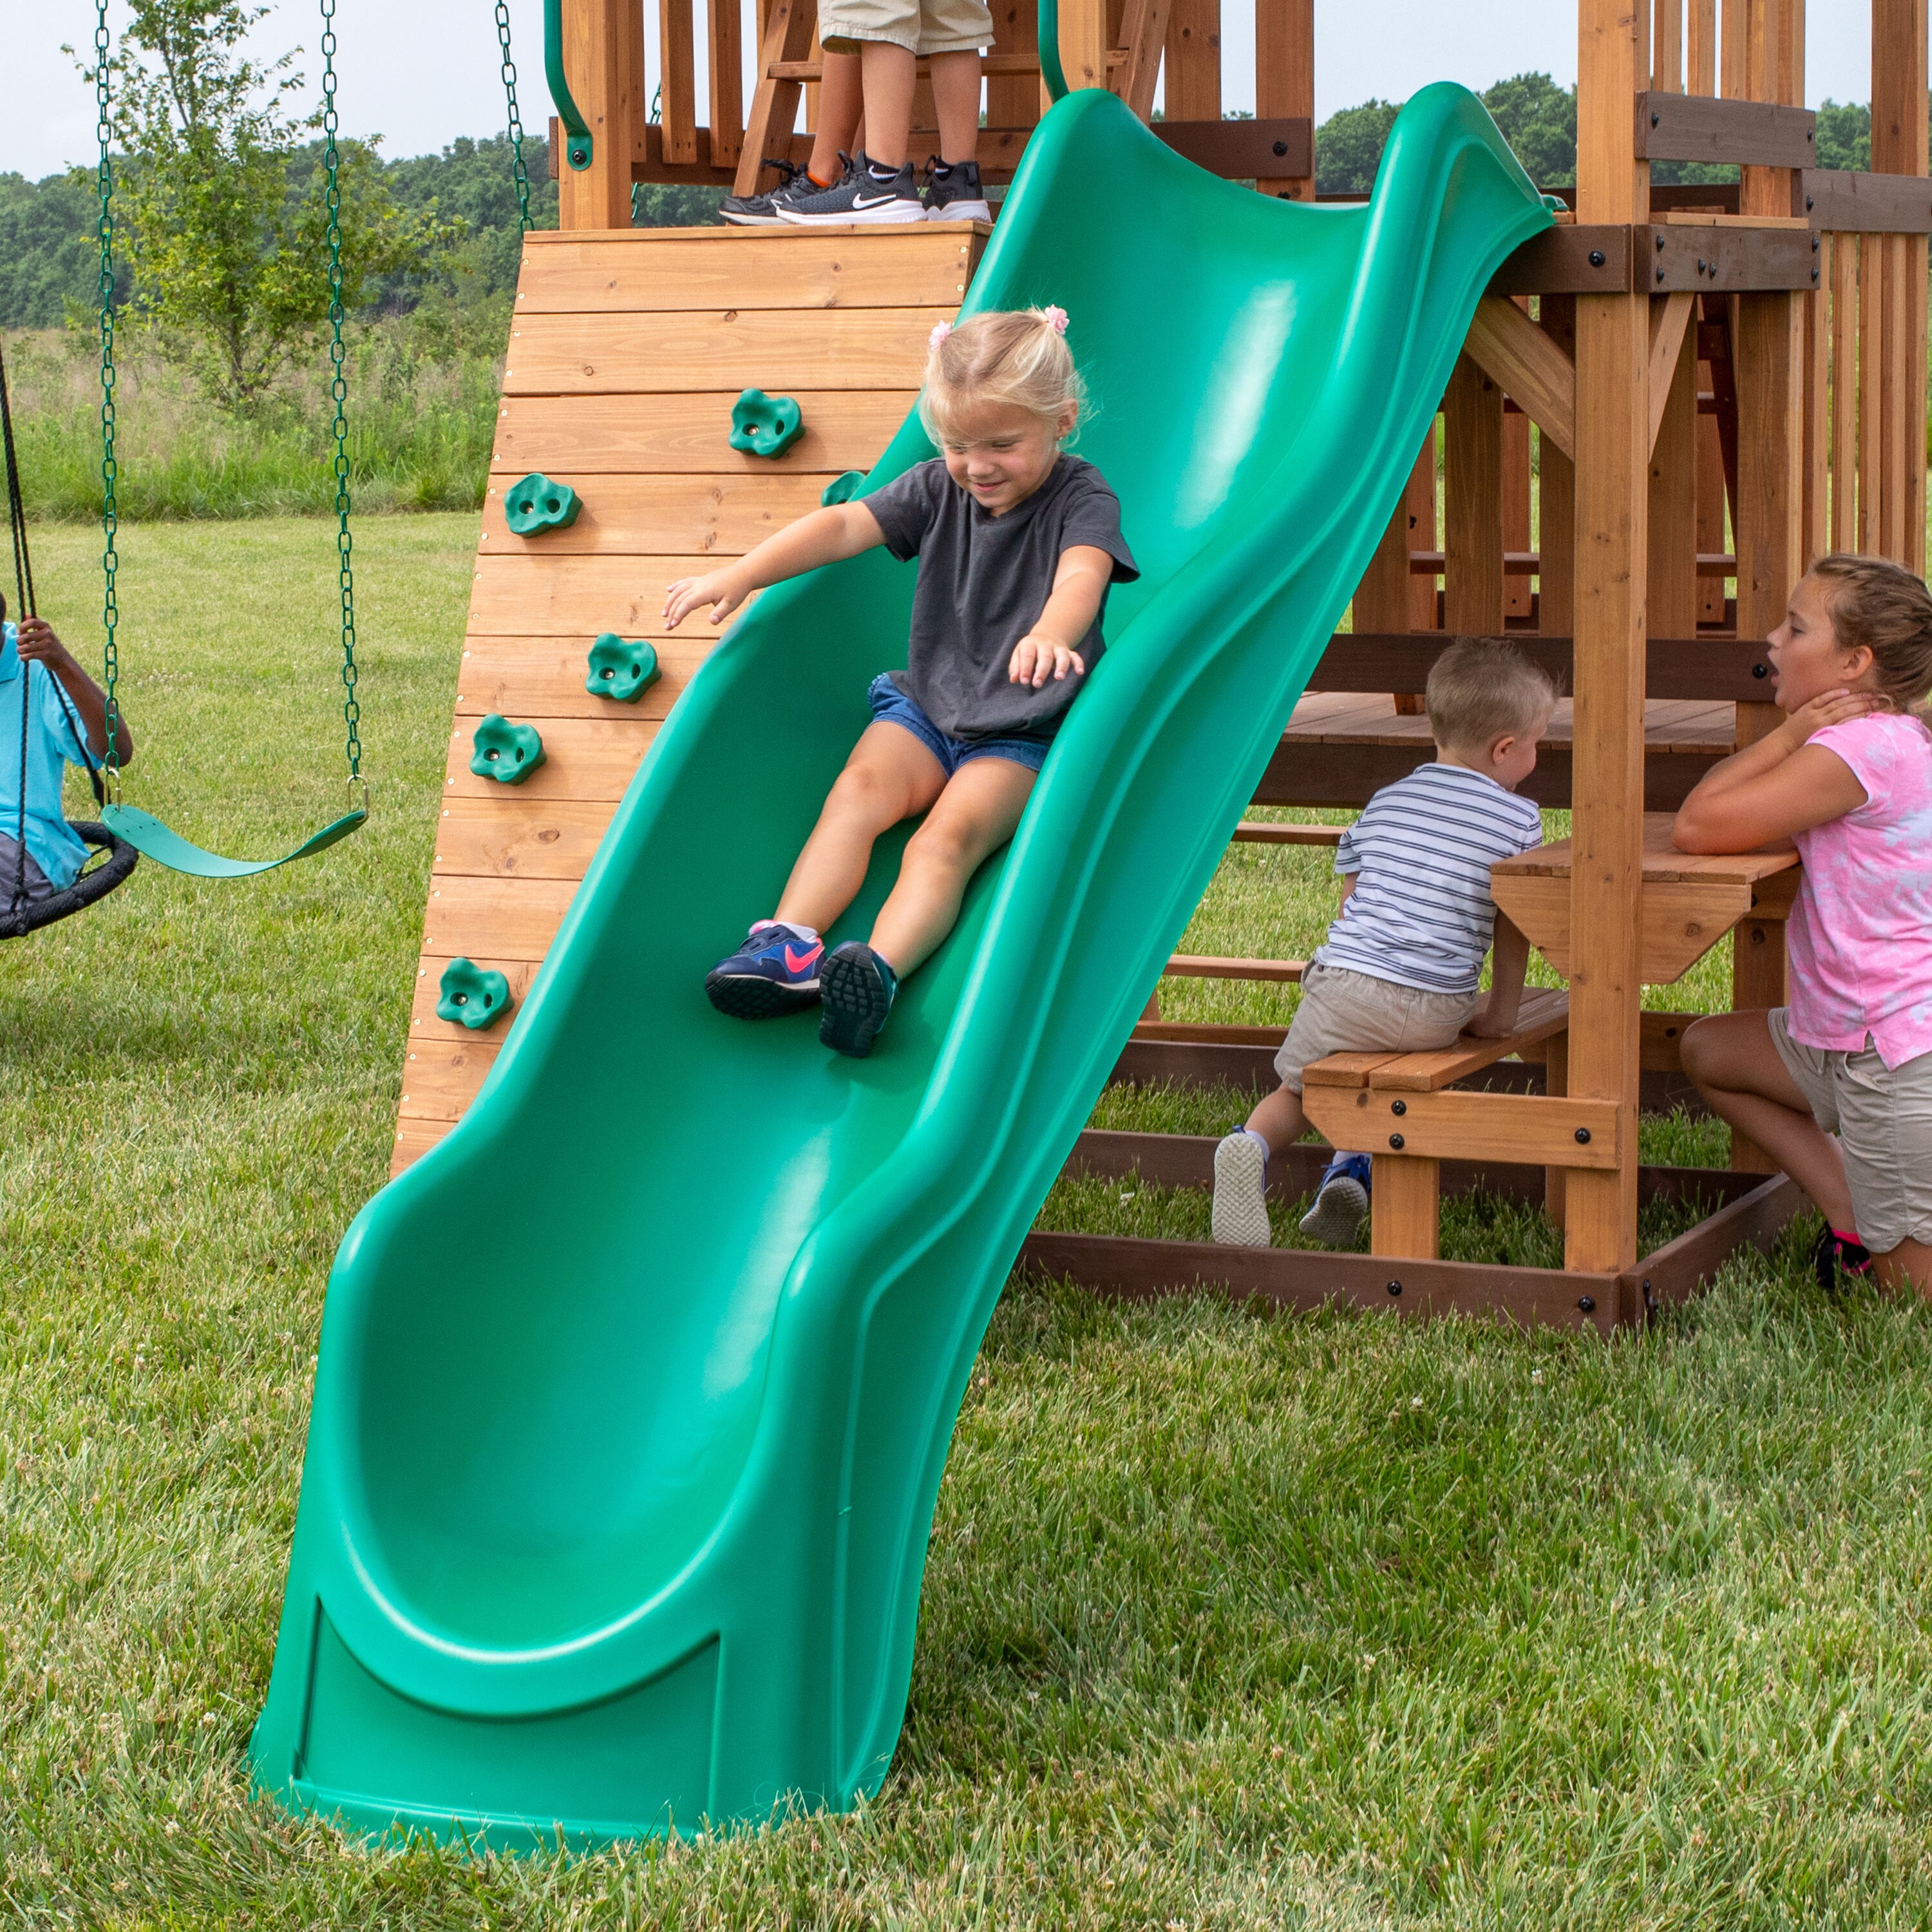 Kids Slide w Wide Handrails Backyard Playset Garden Playground Equipment Green 